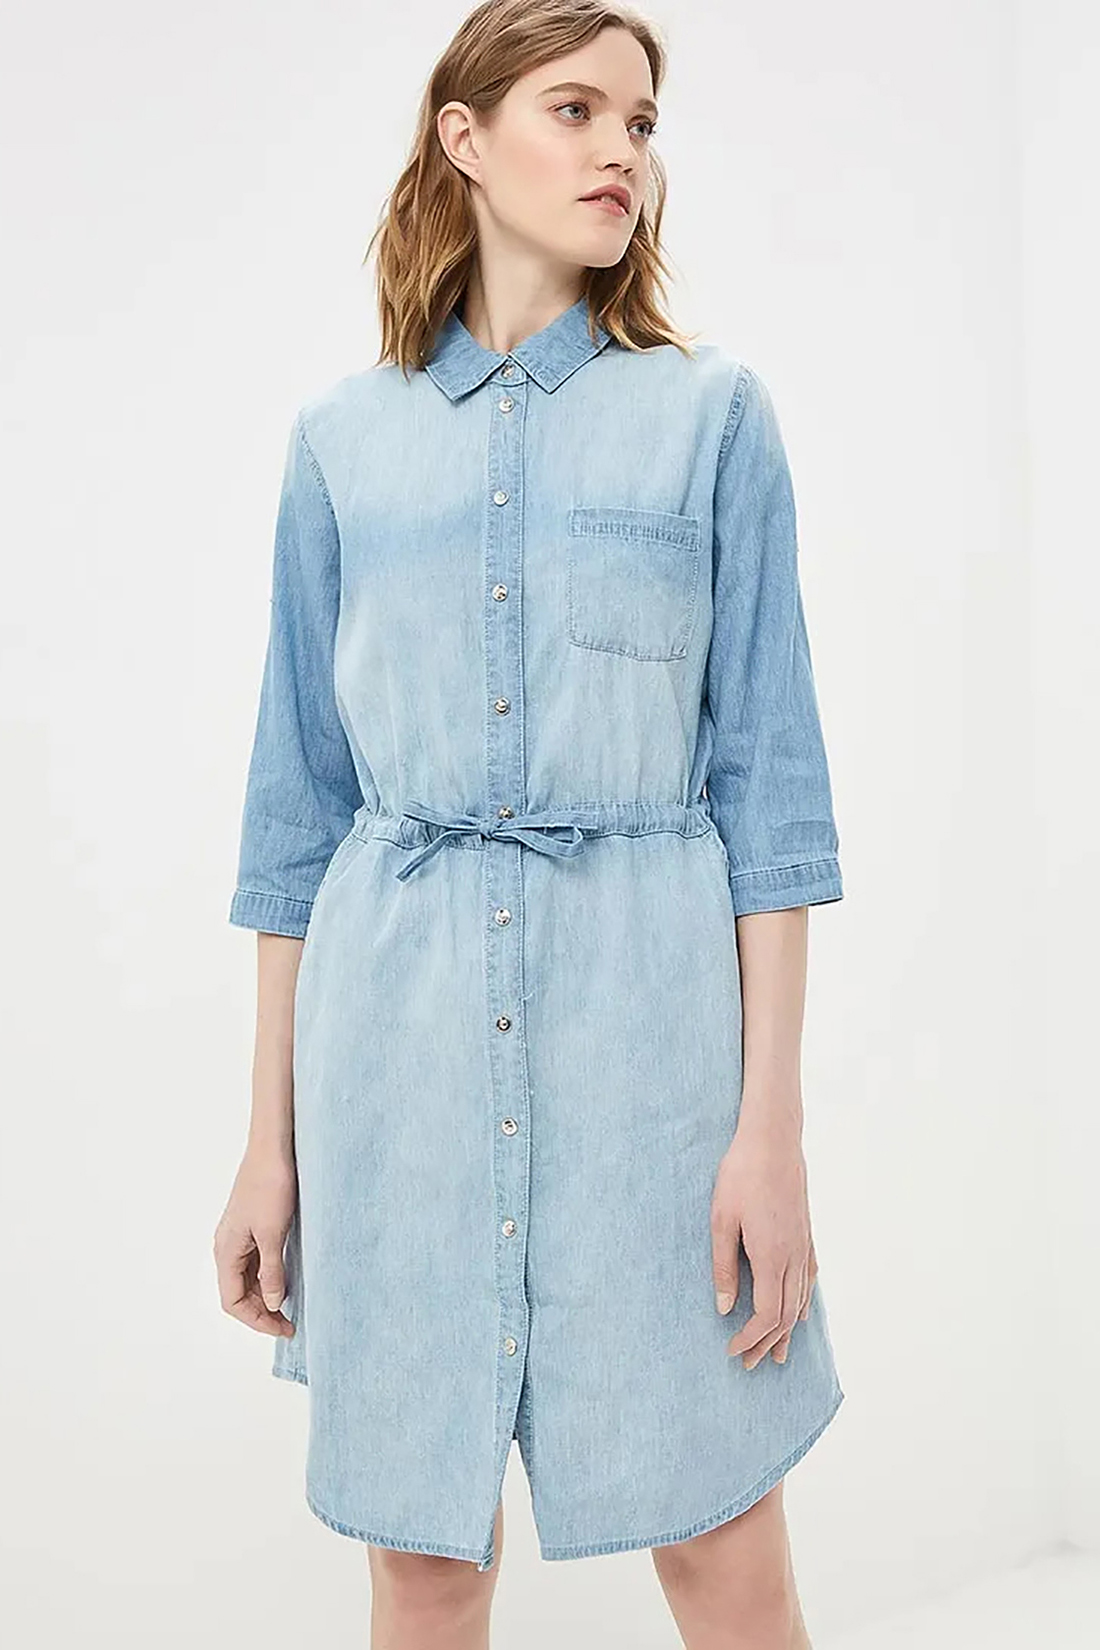 Платье-рубашка из денима (арт. baon B459103), размер S, цвет light blue denim#голубой Платье-рубашка из денима (арт. baon B459103) - фото 3